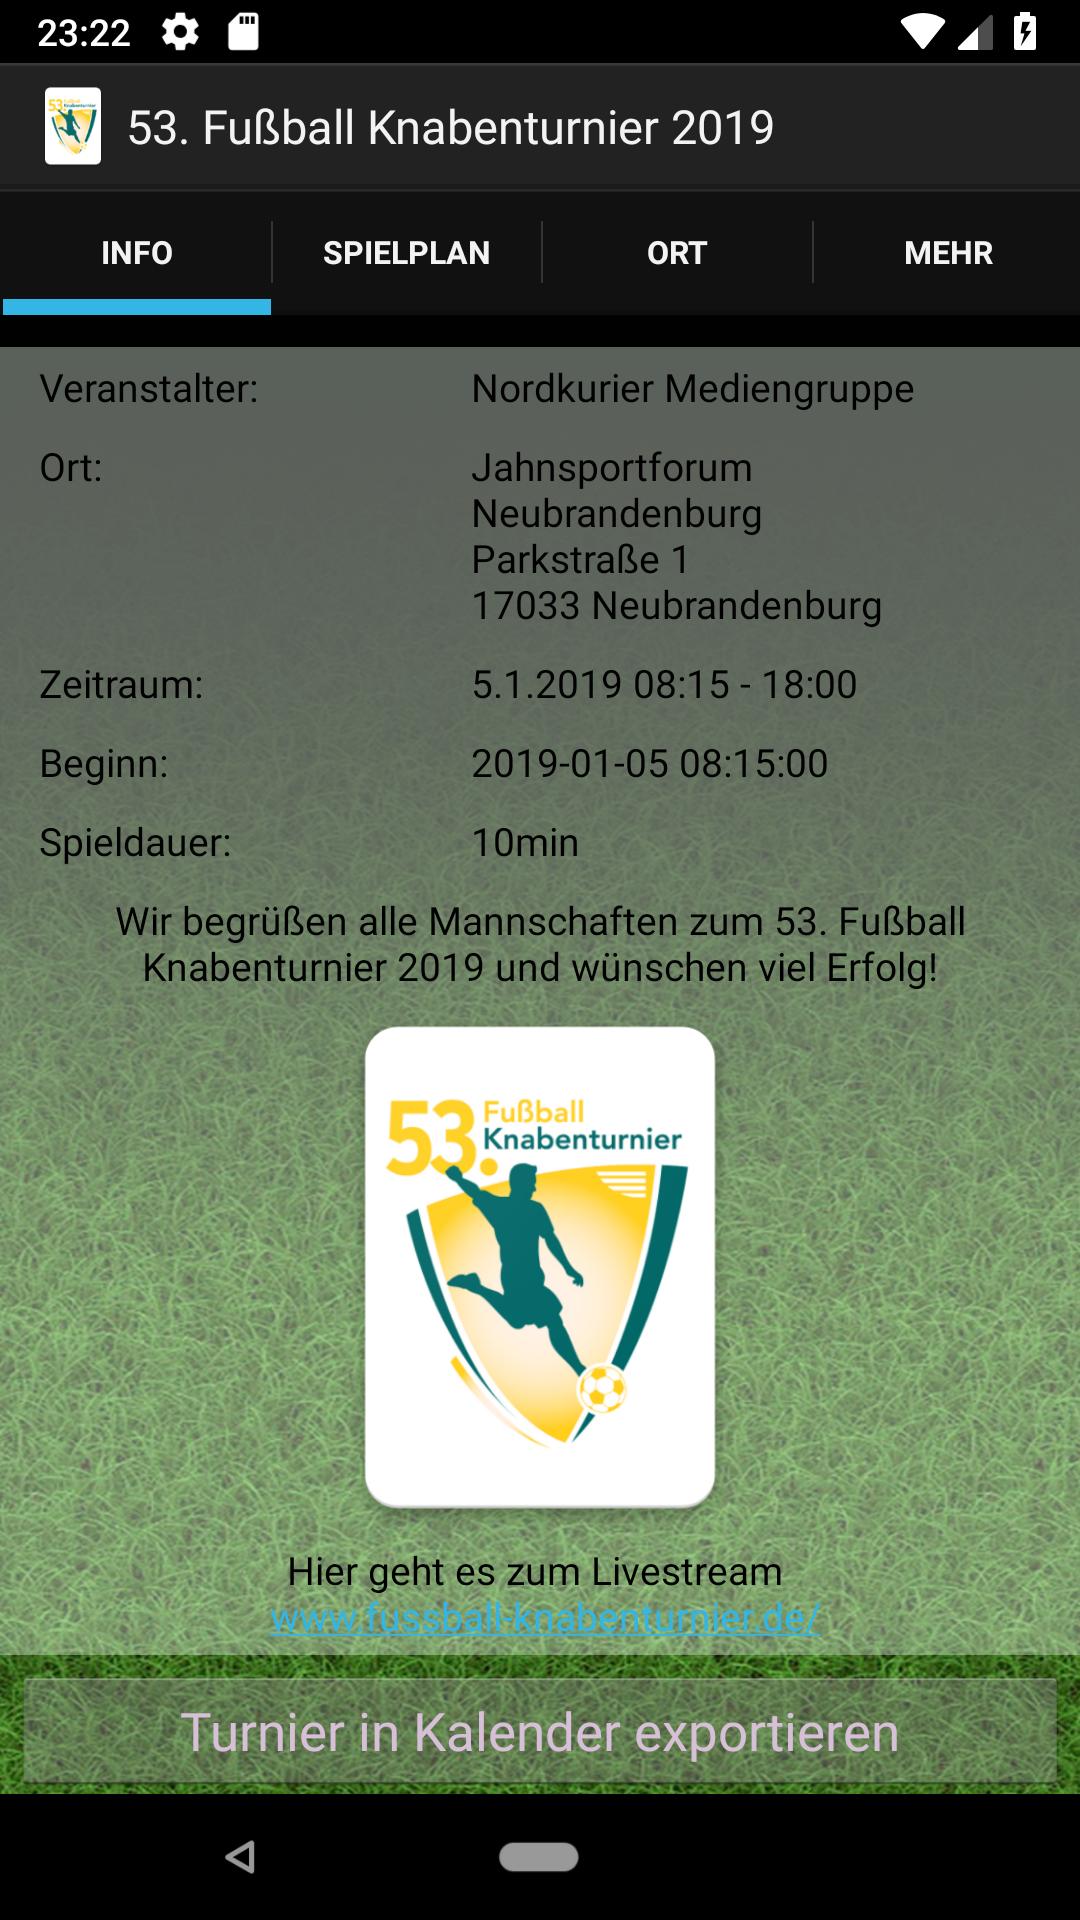 53. Fußball Knabenturnier 2019 for Android - APK Download